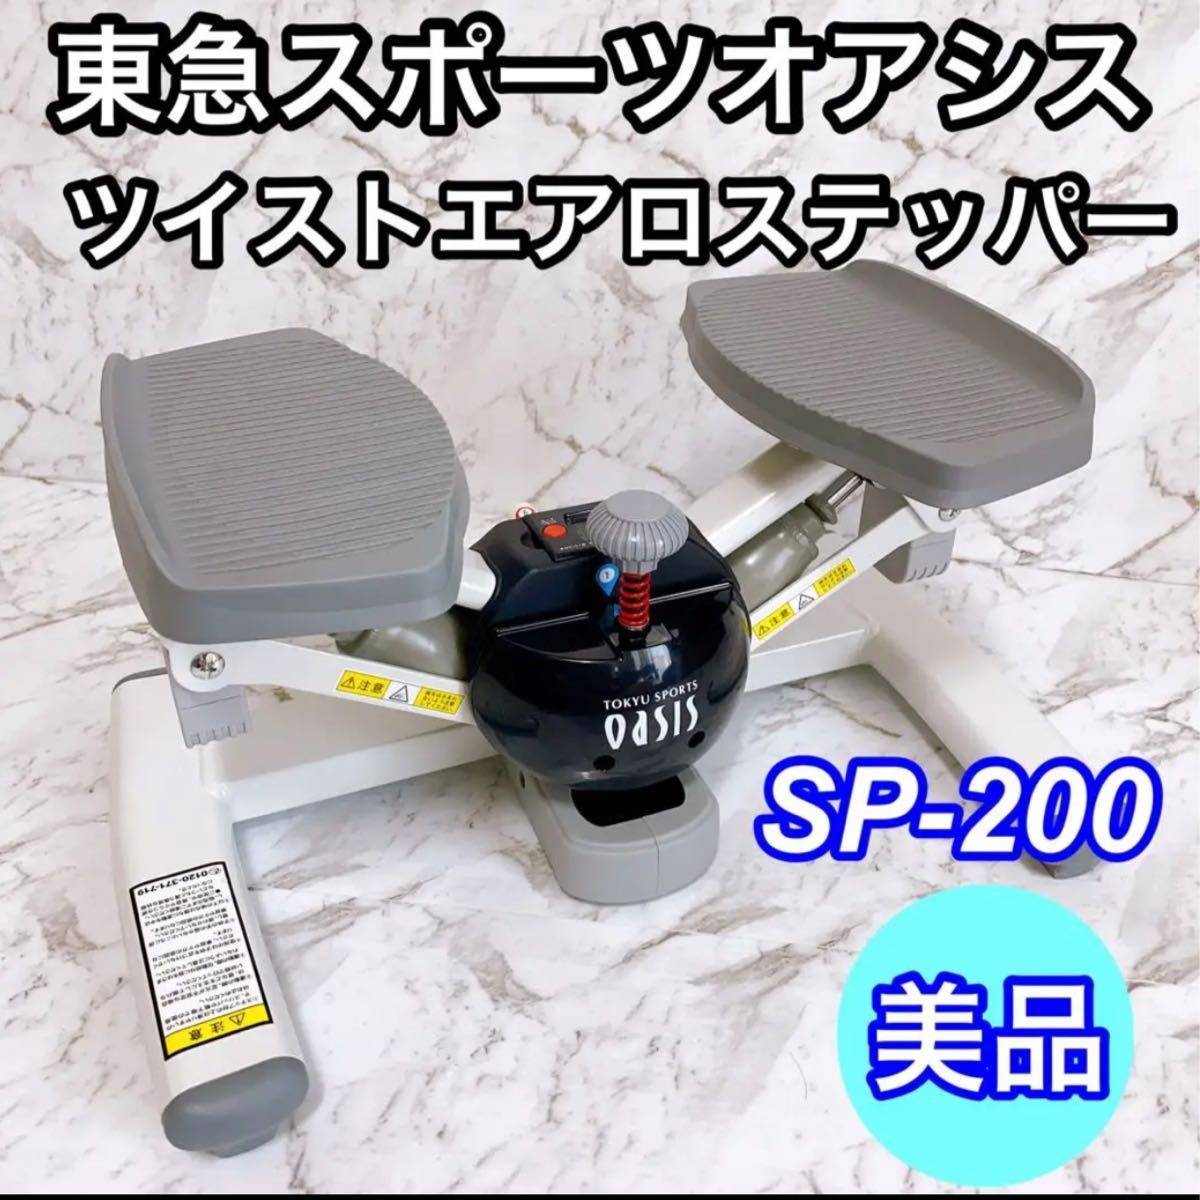 東急スポーツオアシス ツイスト ステッパー 連続使用約60分 静音 SP